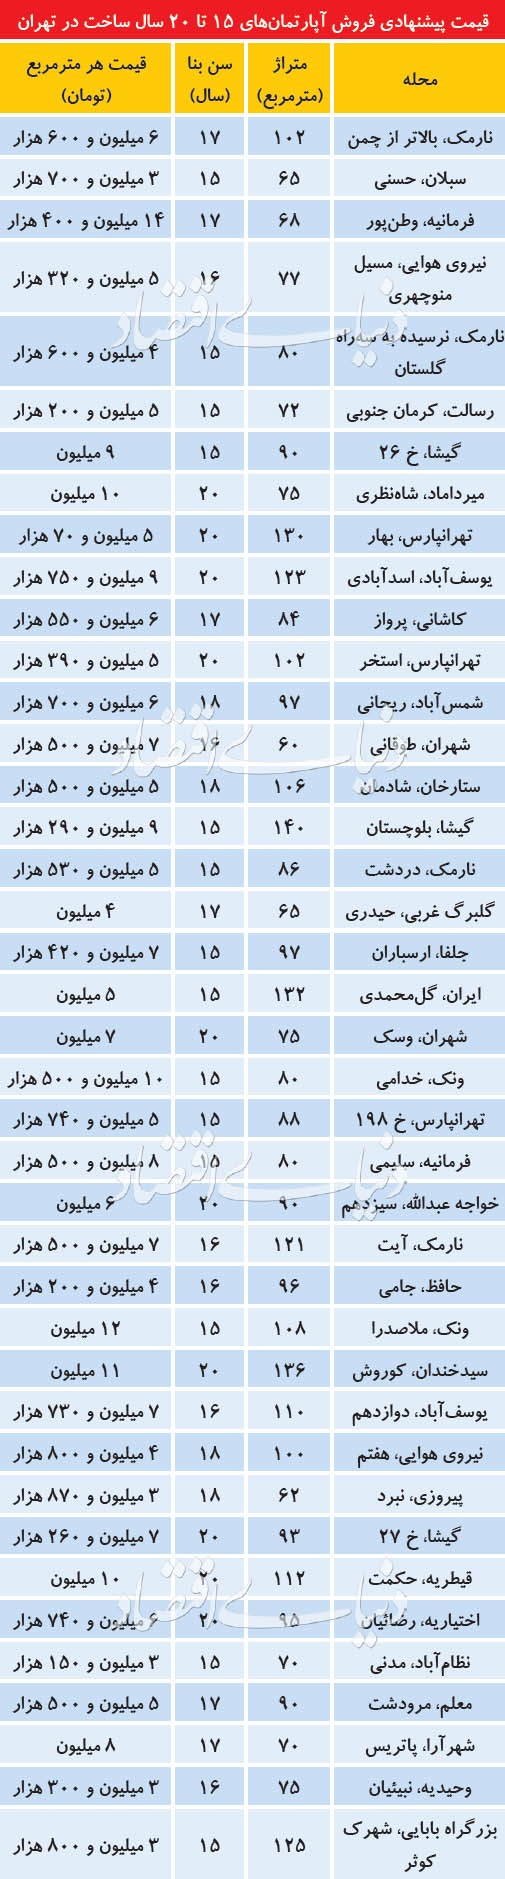 قیمت آپارتمانهای 15تا 20ساله در مناطق مختلف تهران